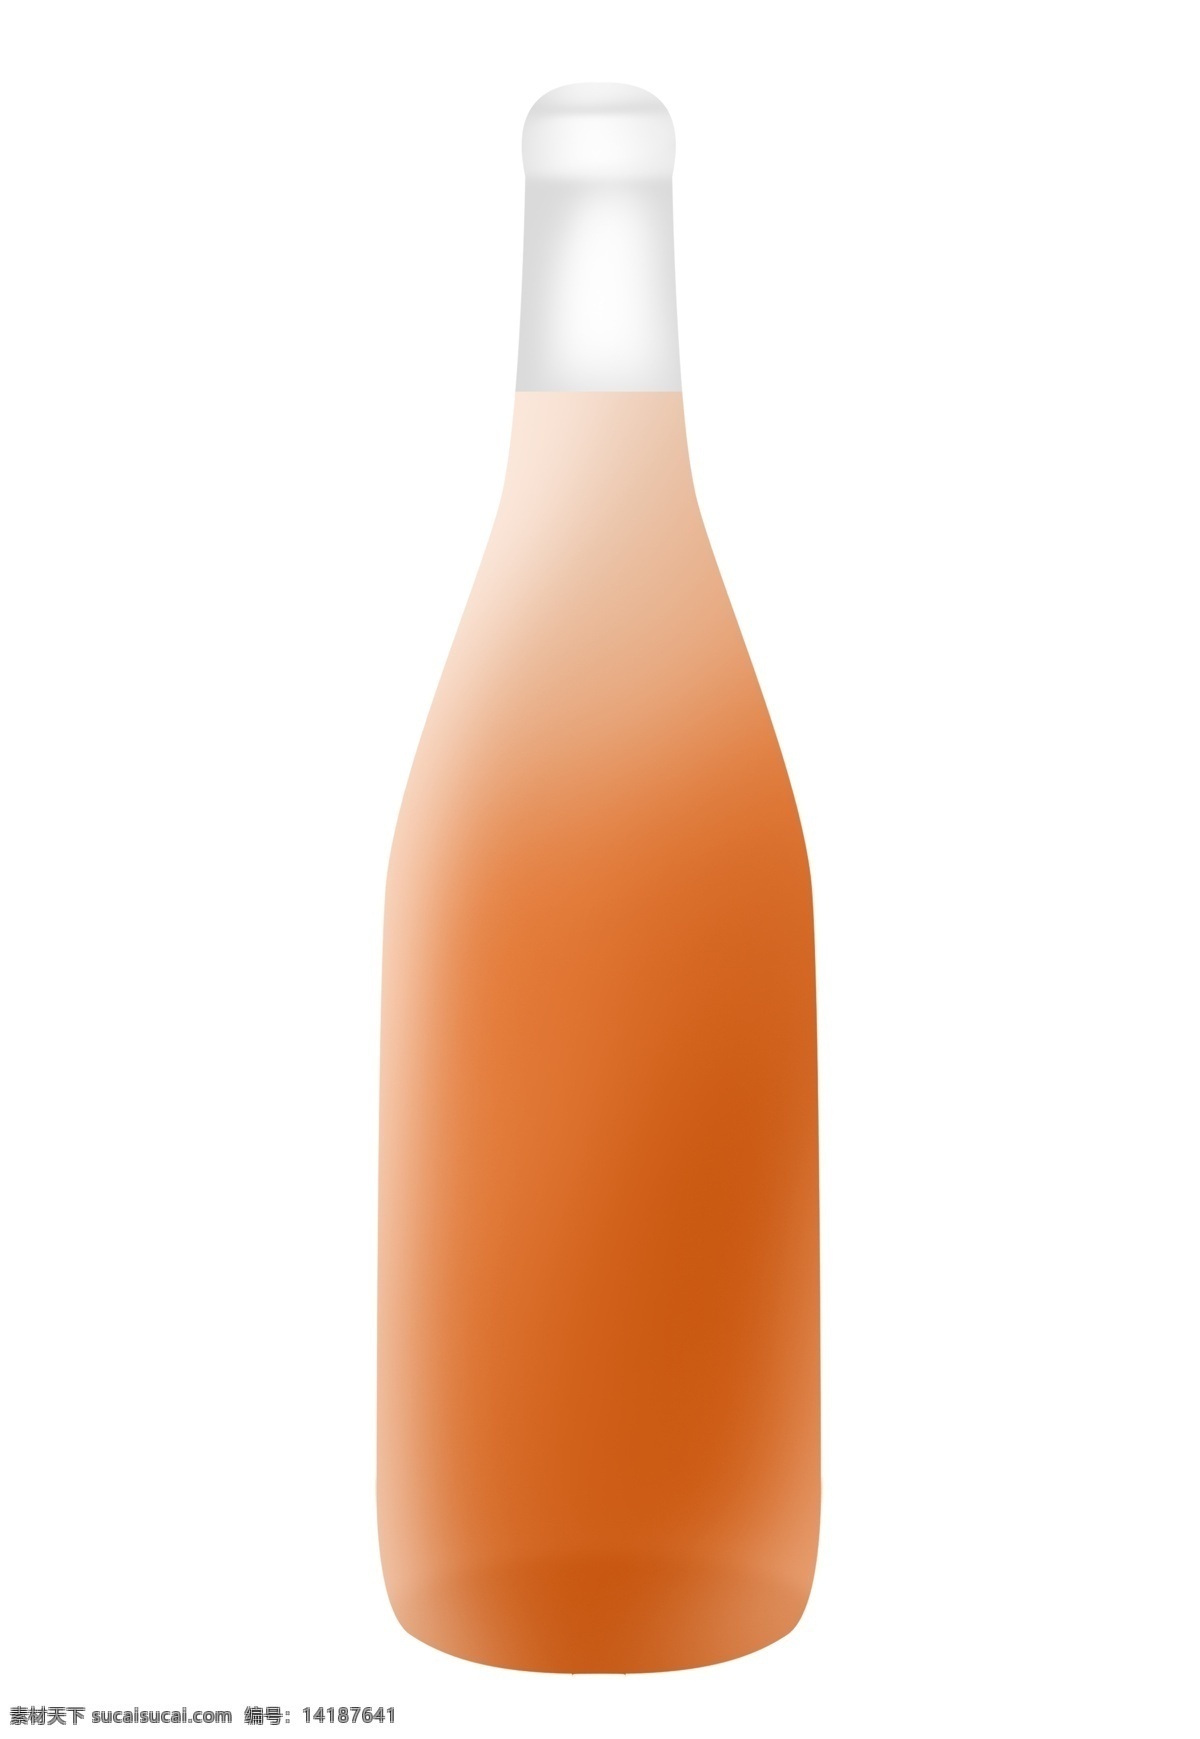 创意 红酒 酒瓶 插画 红色的酒瓶 红色液体 卡通红酒插画 精美的红酒 透明酒瓶 卡通酒瓶插画